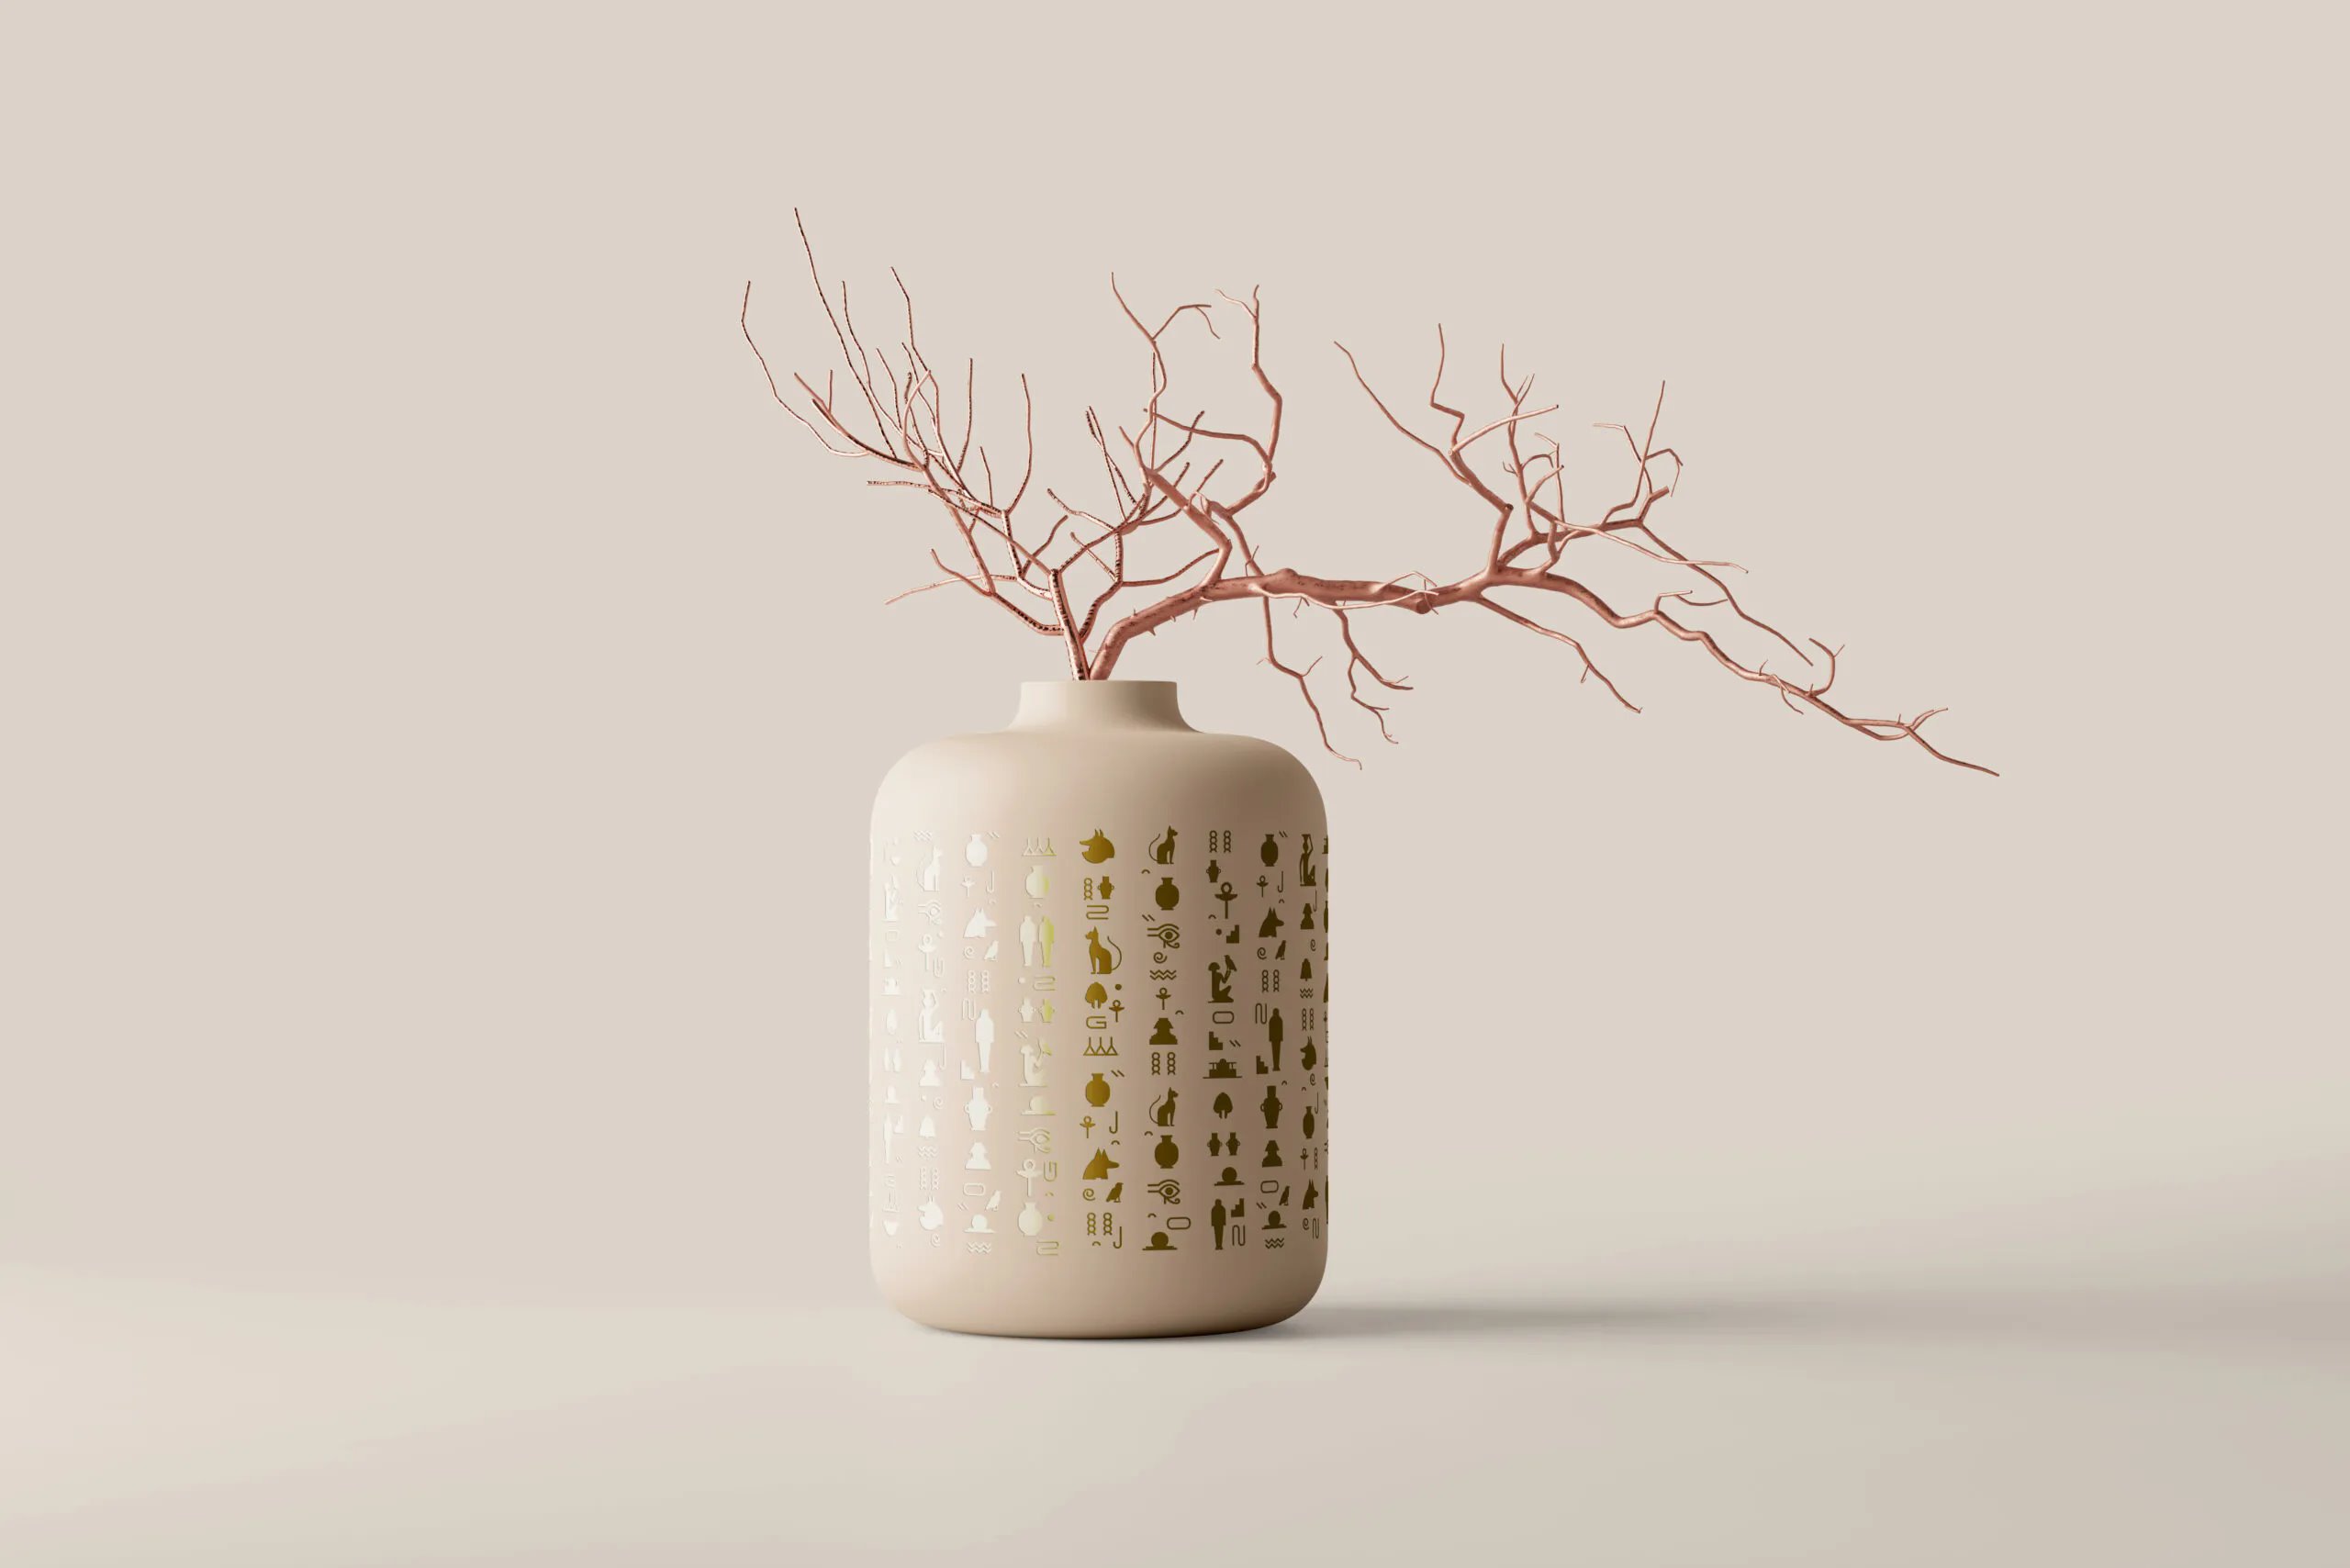 8 Ceramic Vase Mockups in Distinct Sights FREE PSD